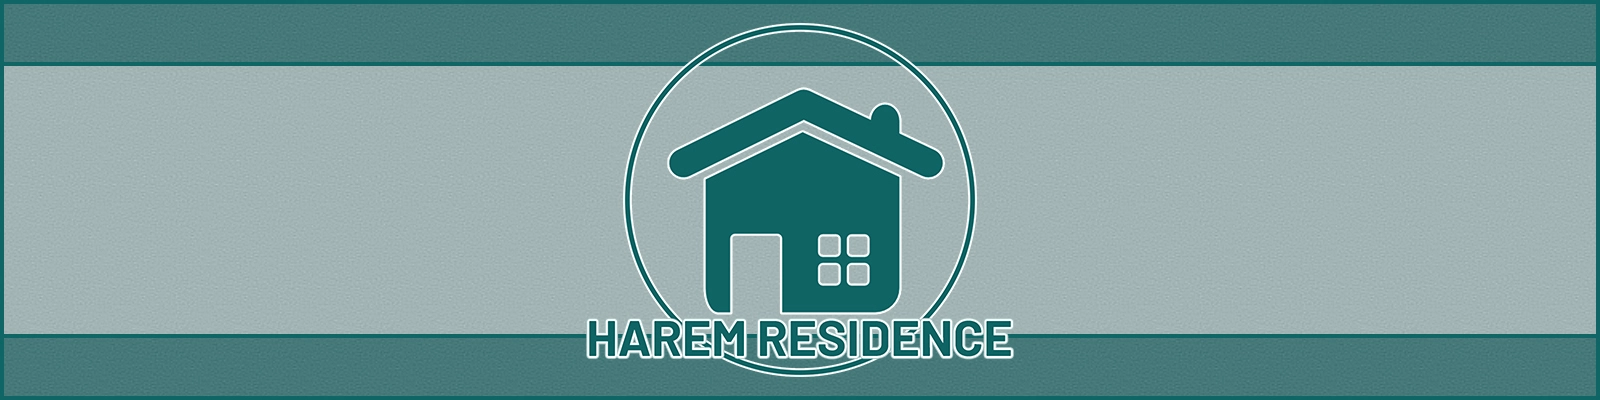 Harem Residence [v0.01b] main image